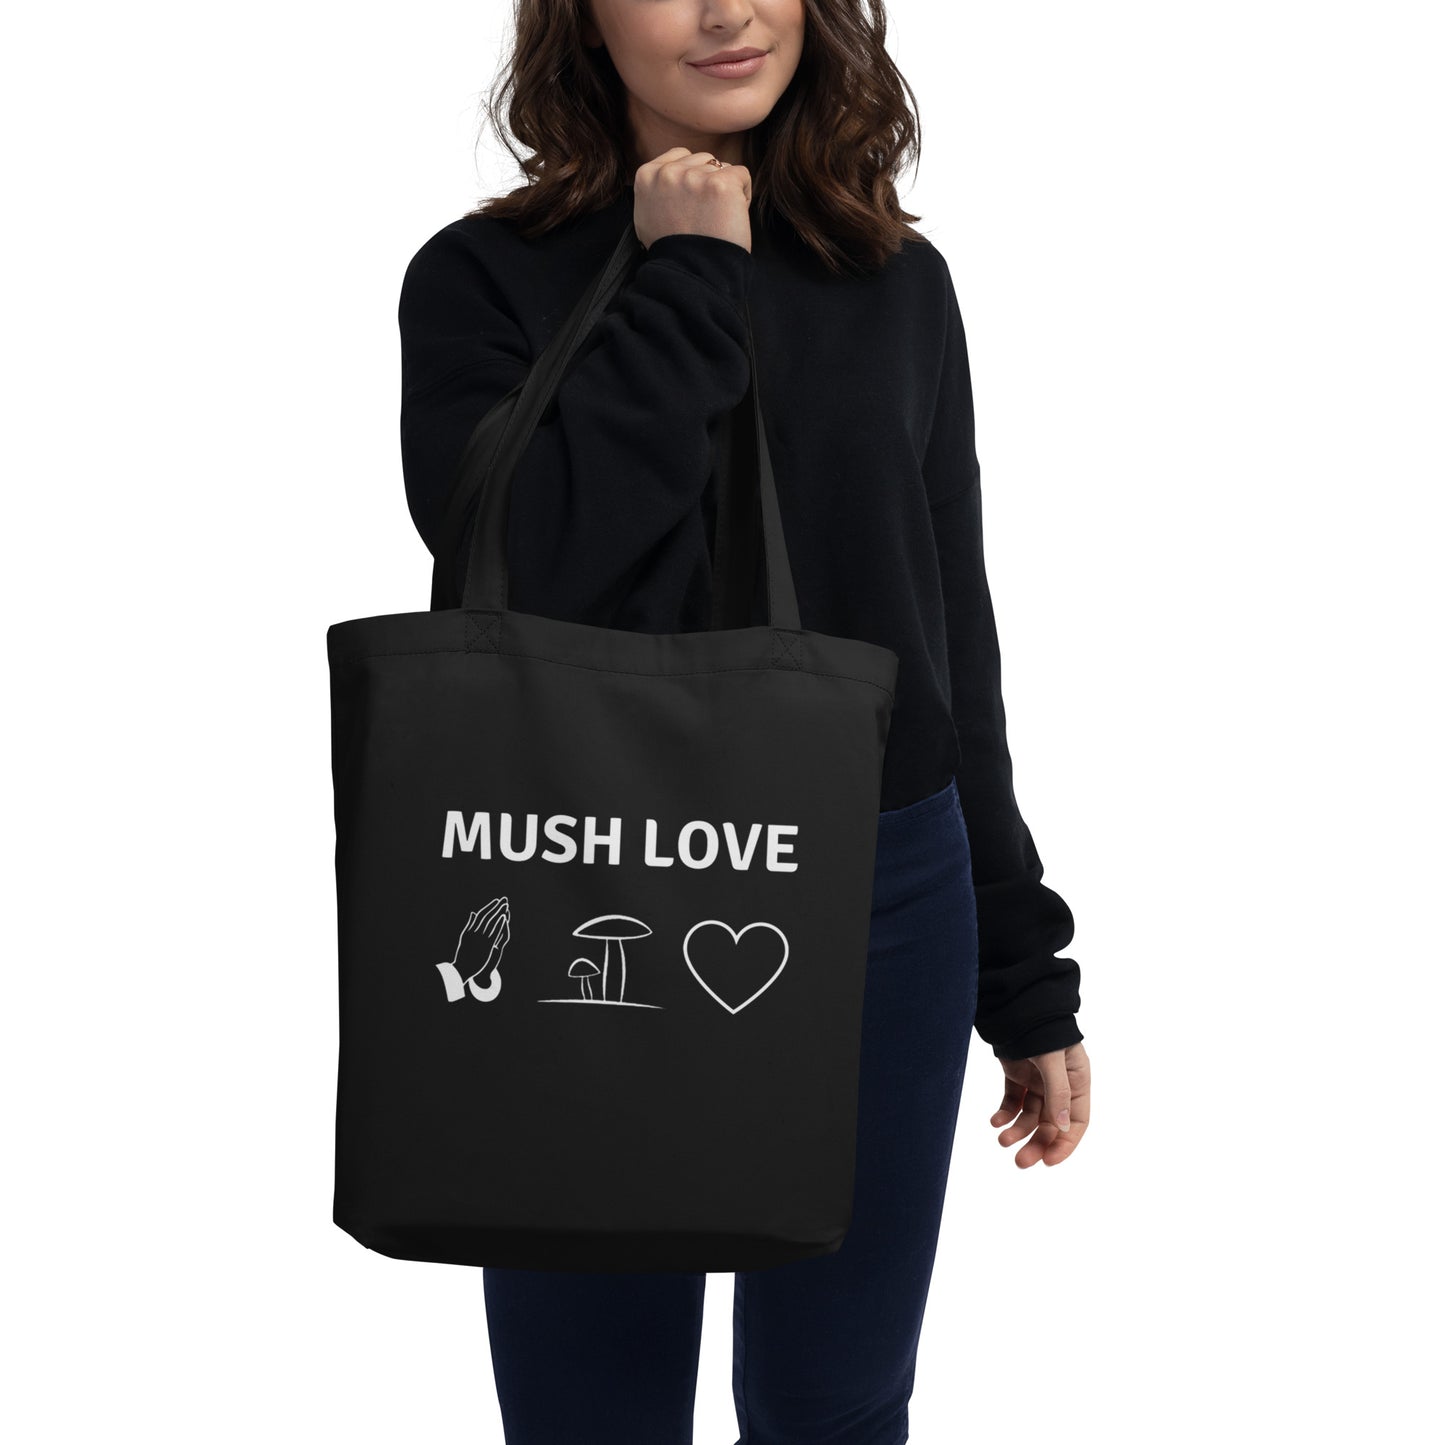 Mush Love Eco Tote Bag